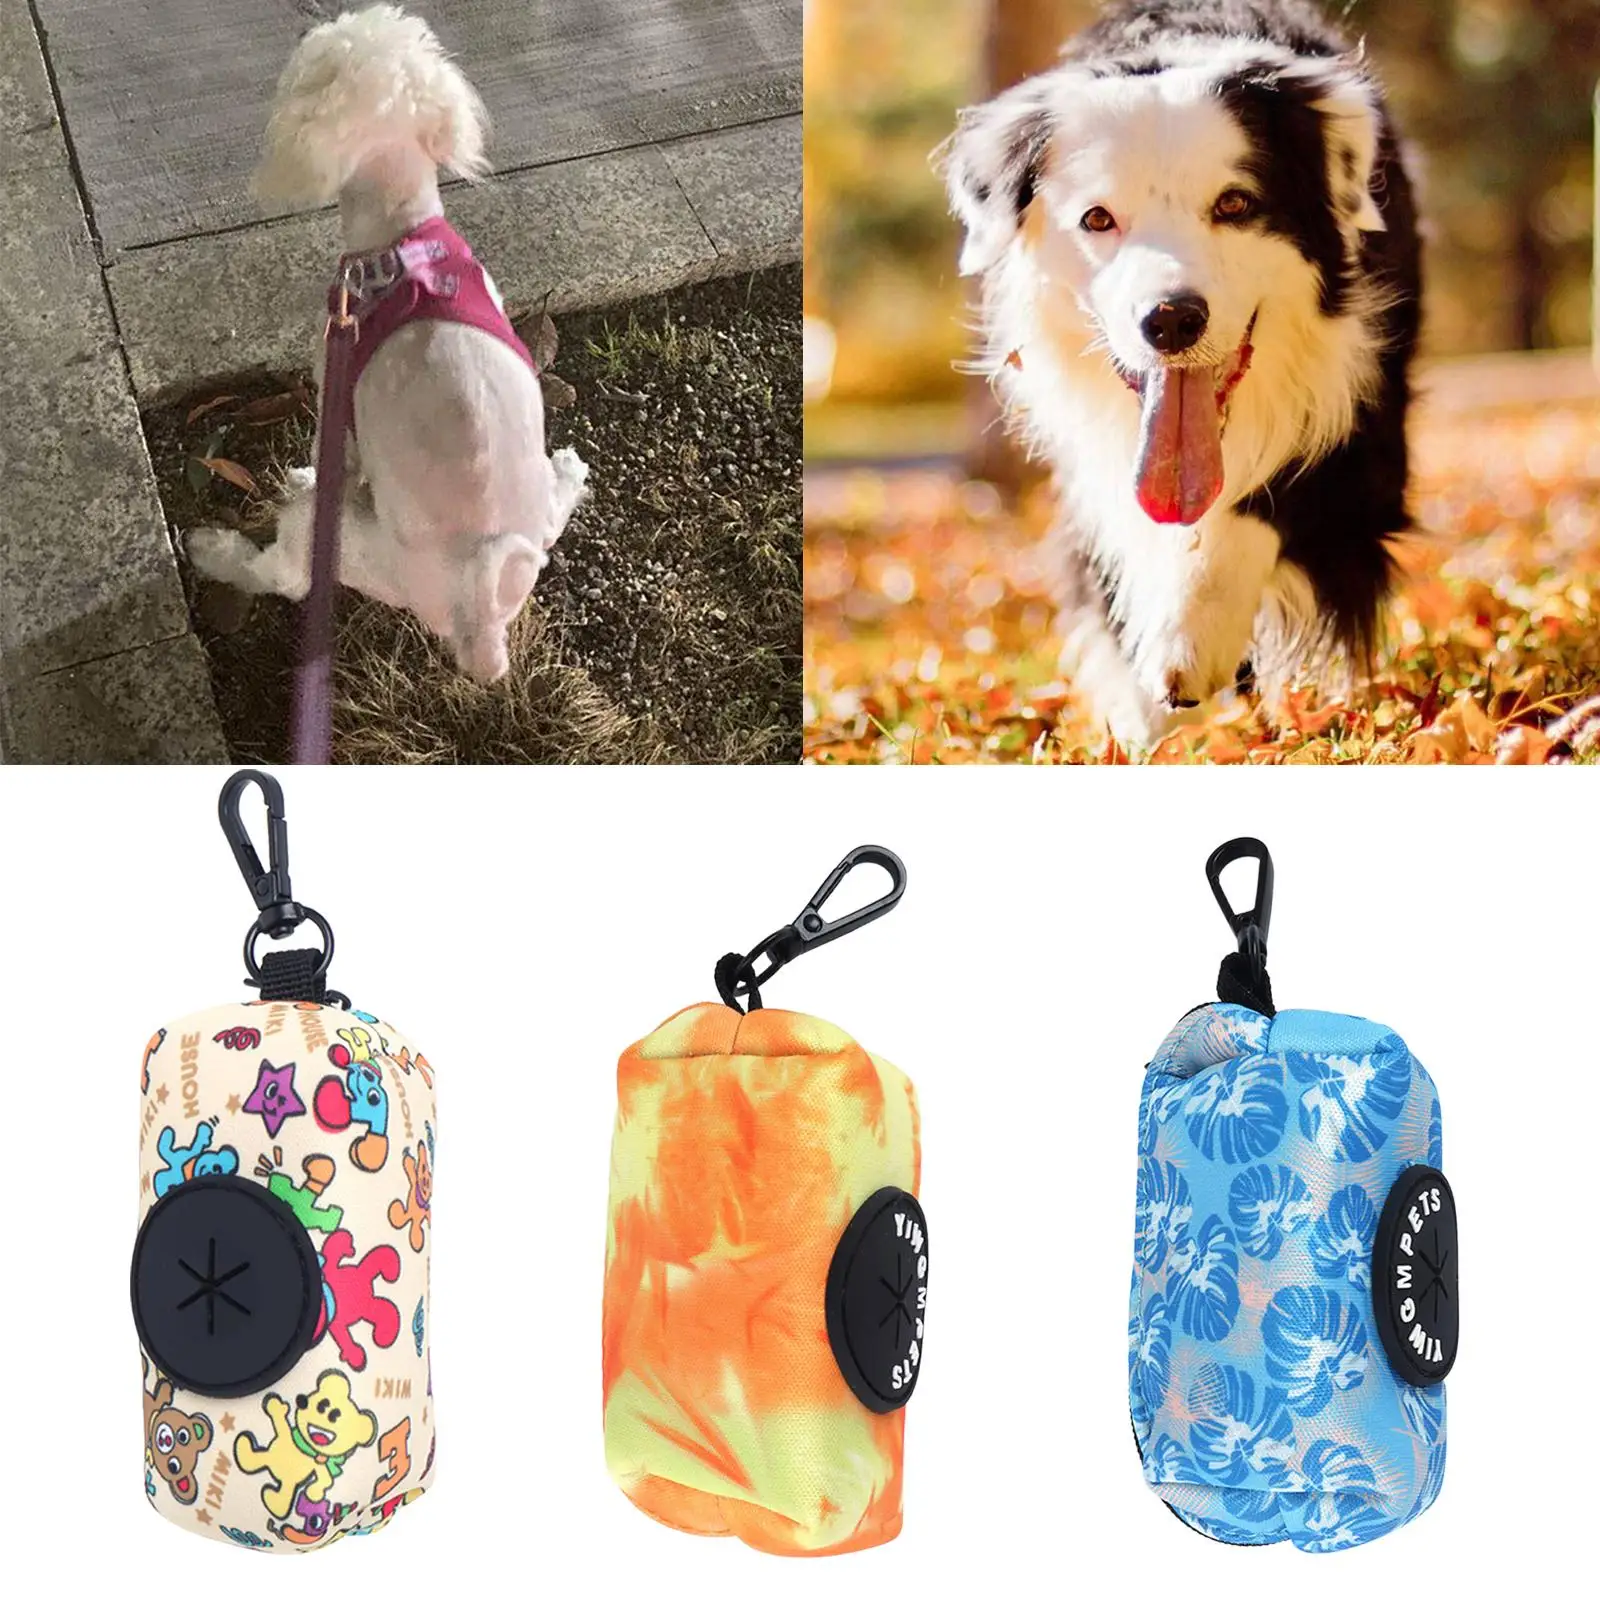 Portable Pet Waste Bag Dispenser Travel Puppy Pickup Bag Dog Poop Bag Holder